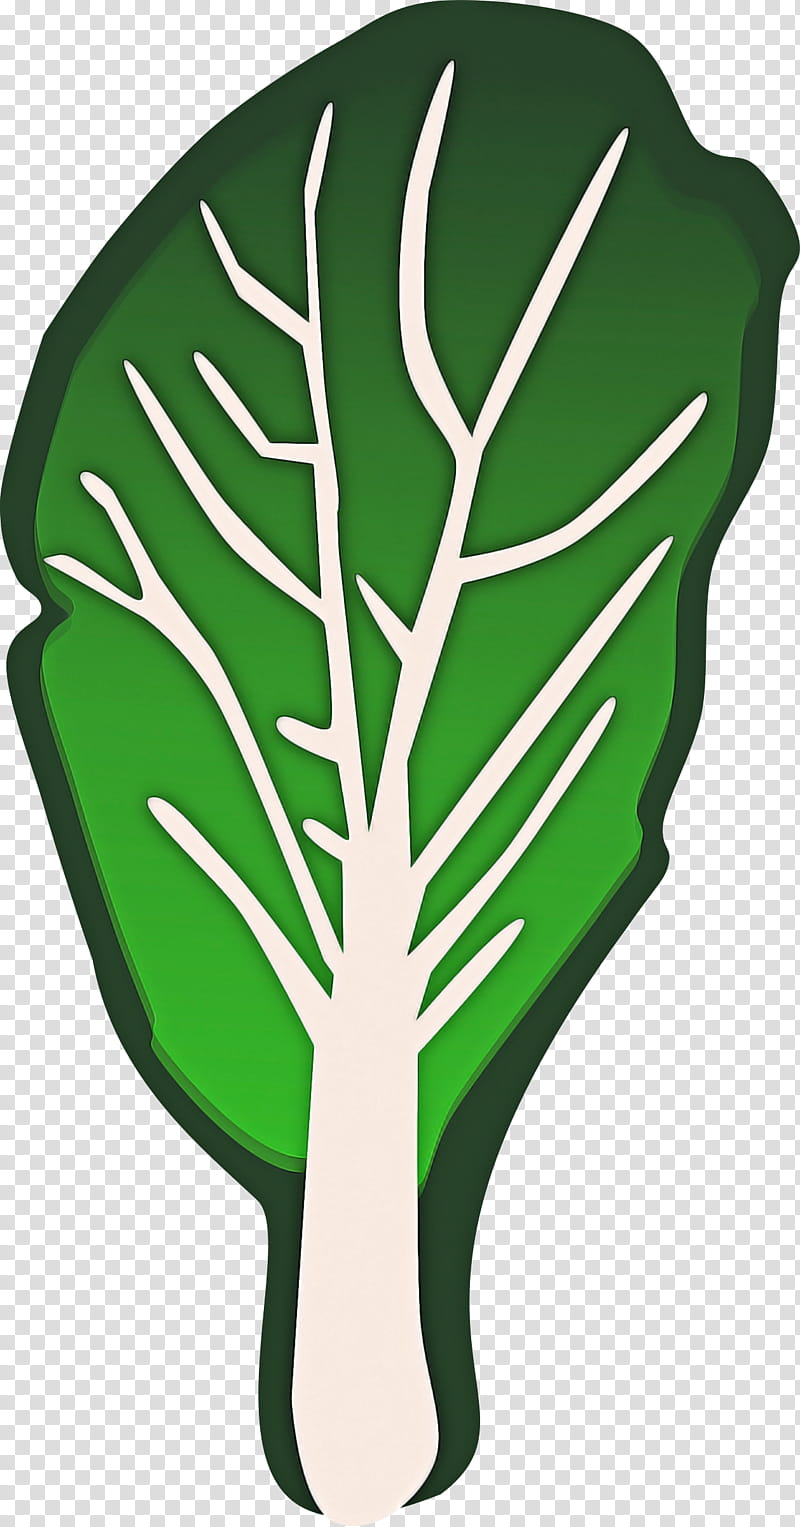 green leaf monstera deliciosa plant leaf vegetable, Tree, Plant Stem transparent background PNG clipart